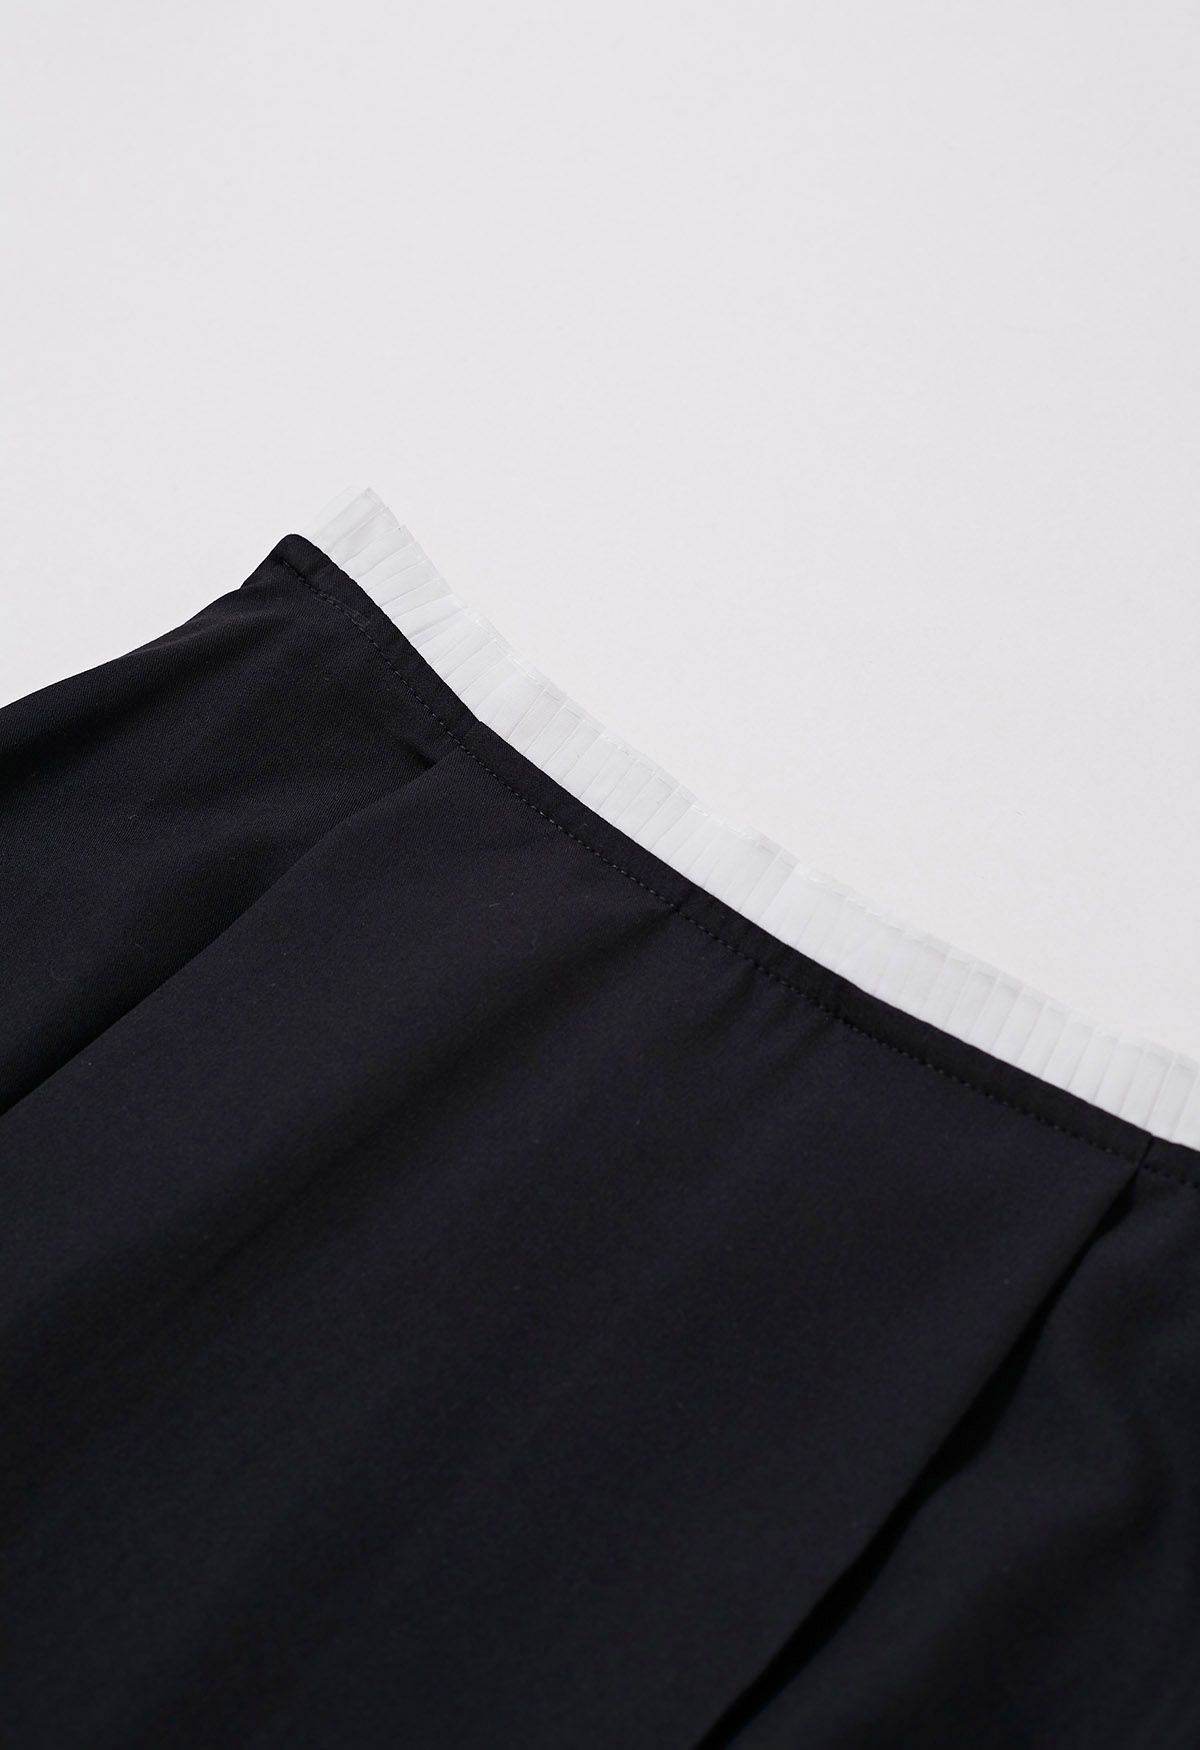 تنورة ماكسي بحزام خصر متباين اللون باللون الأسود